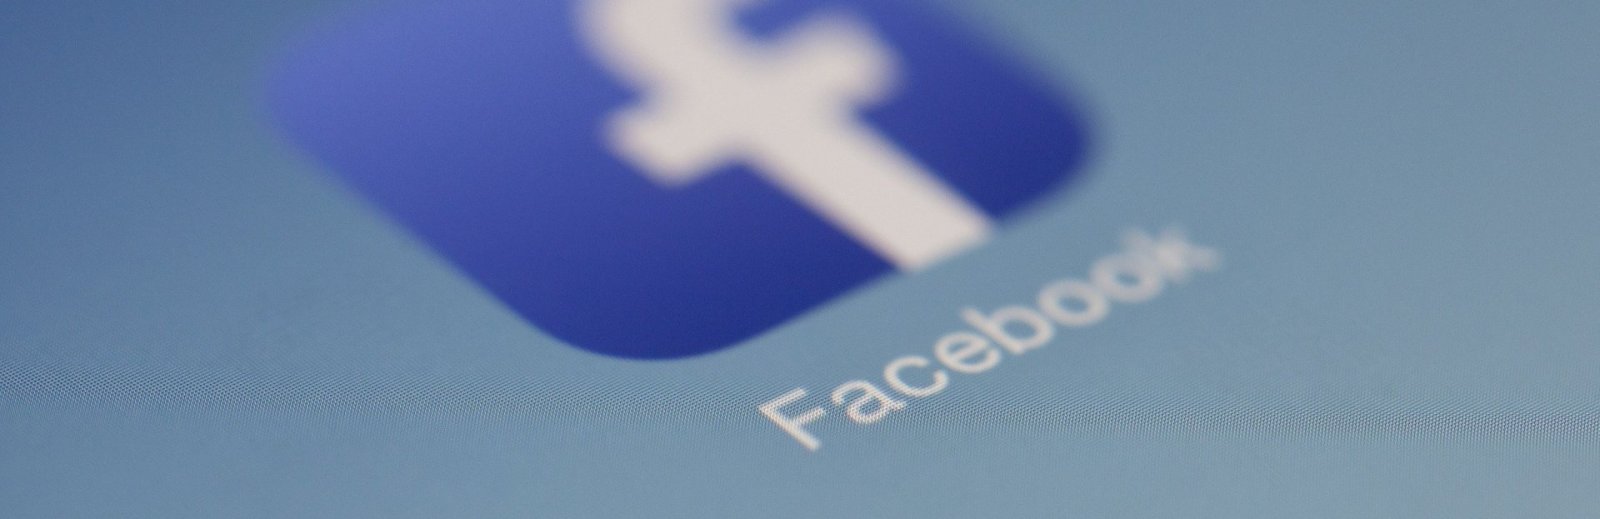 Las lecciones que podemos aprender de la caída de Facebook